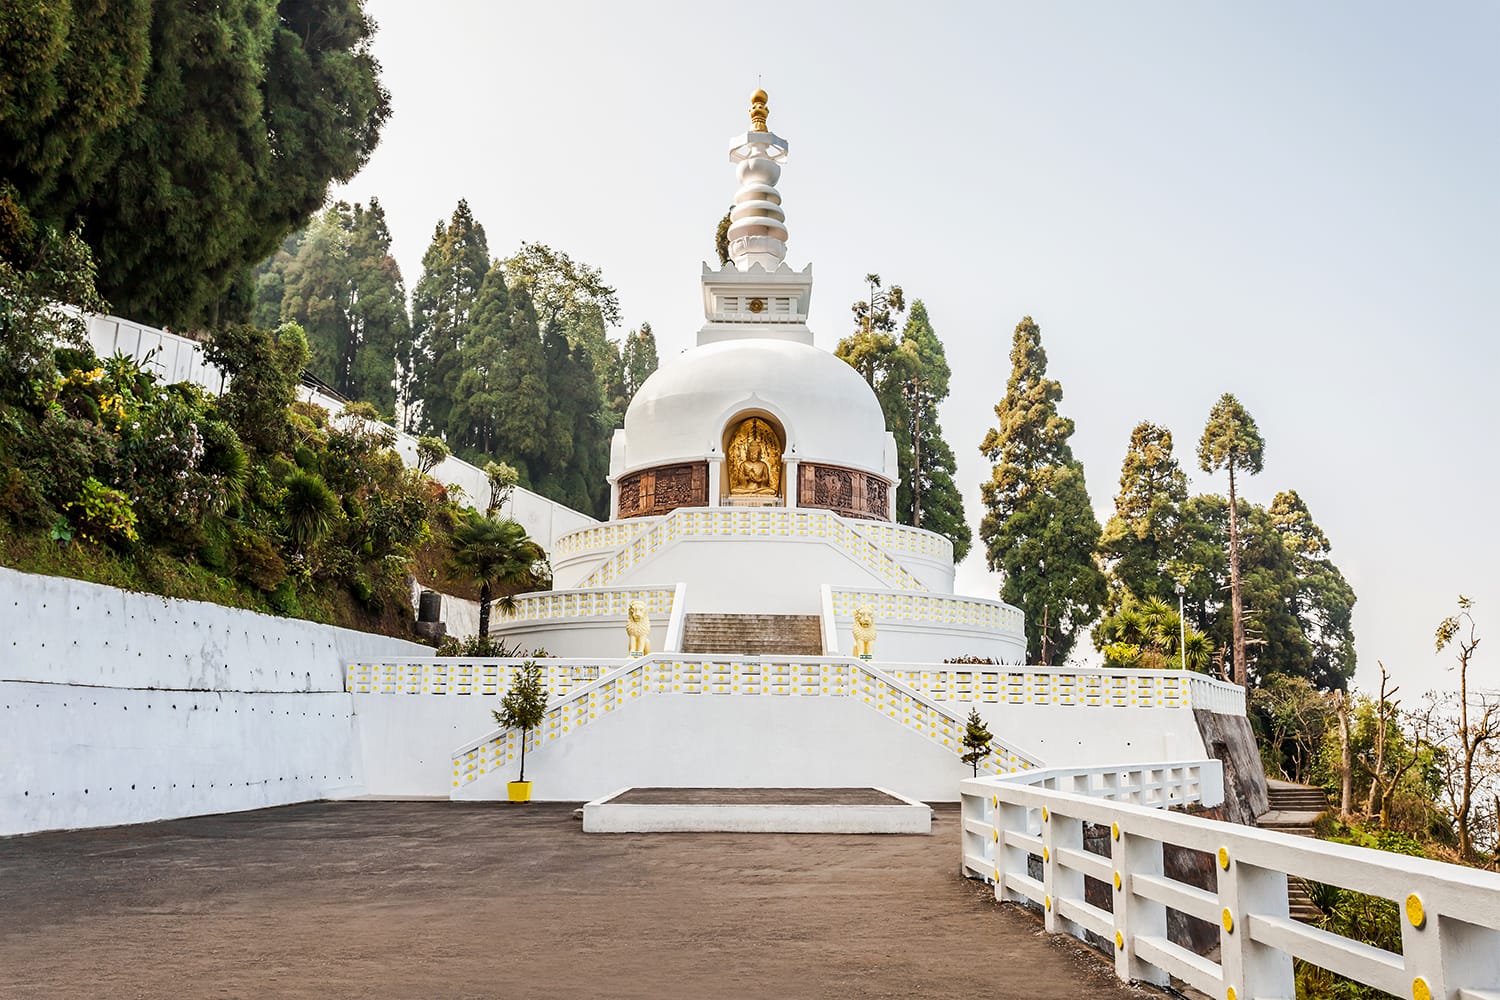 Japanese World Peace Pagoda in Darjeeling in India